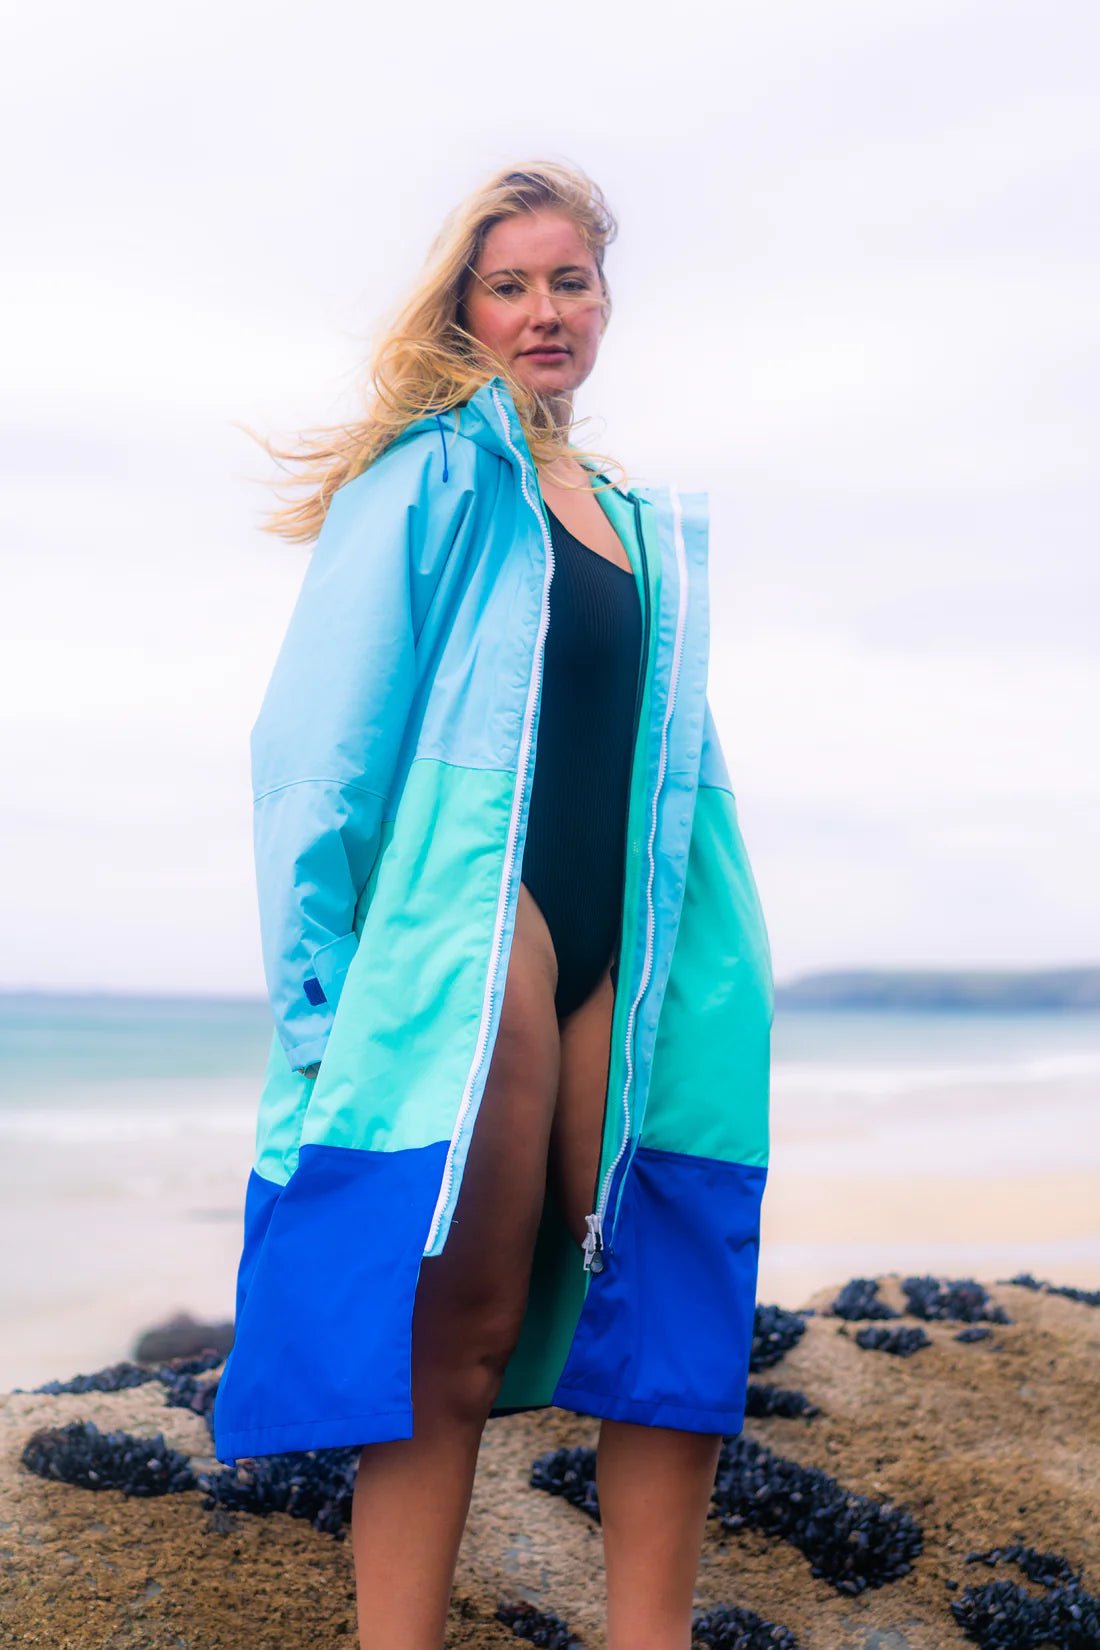 SplashRobe 3 in 1 Aqua tricolour Changing Robe - Worthing Watersports - Ponchos - SplashRobe